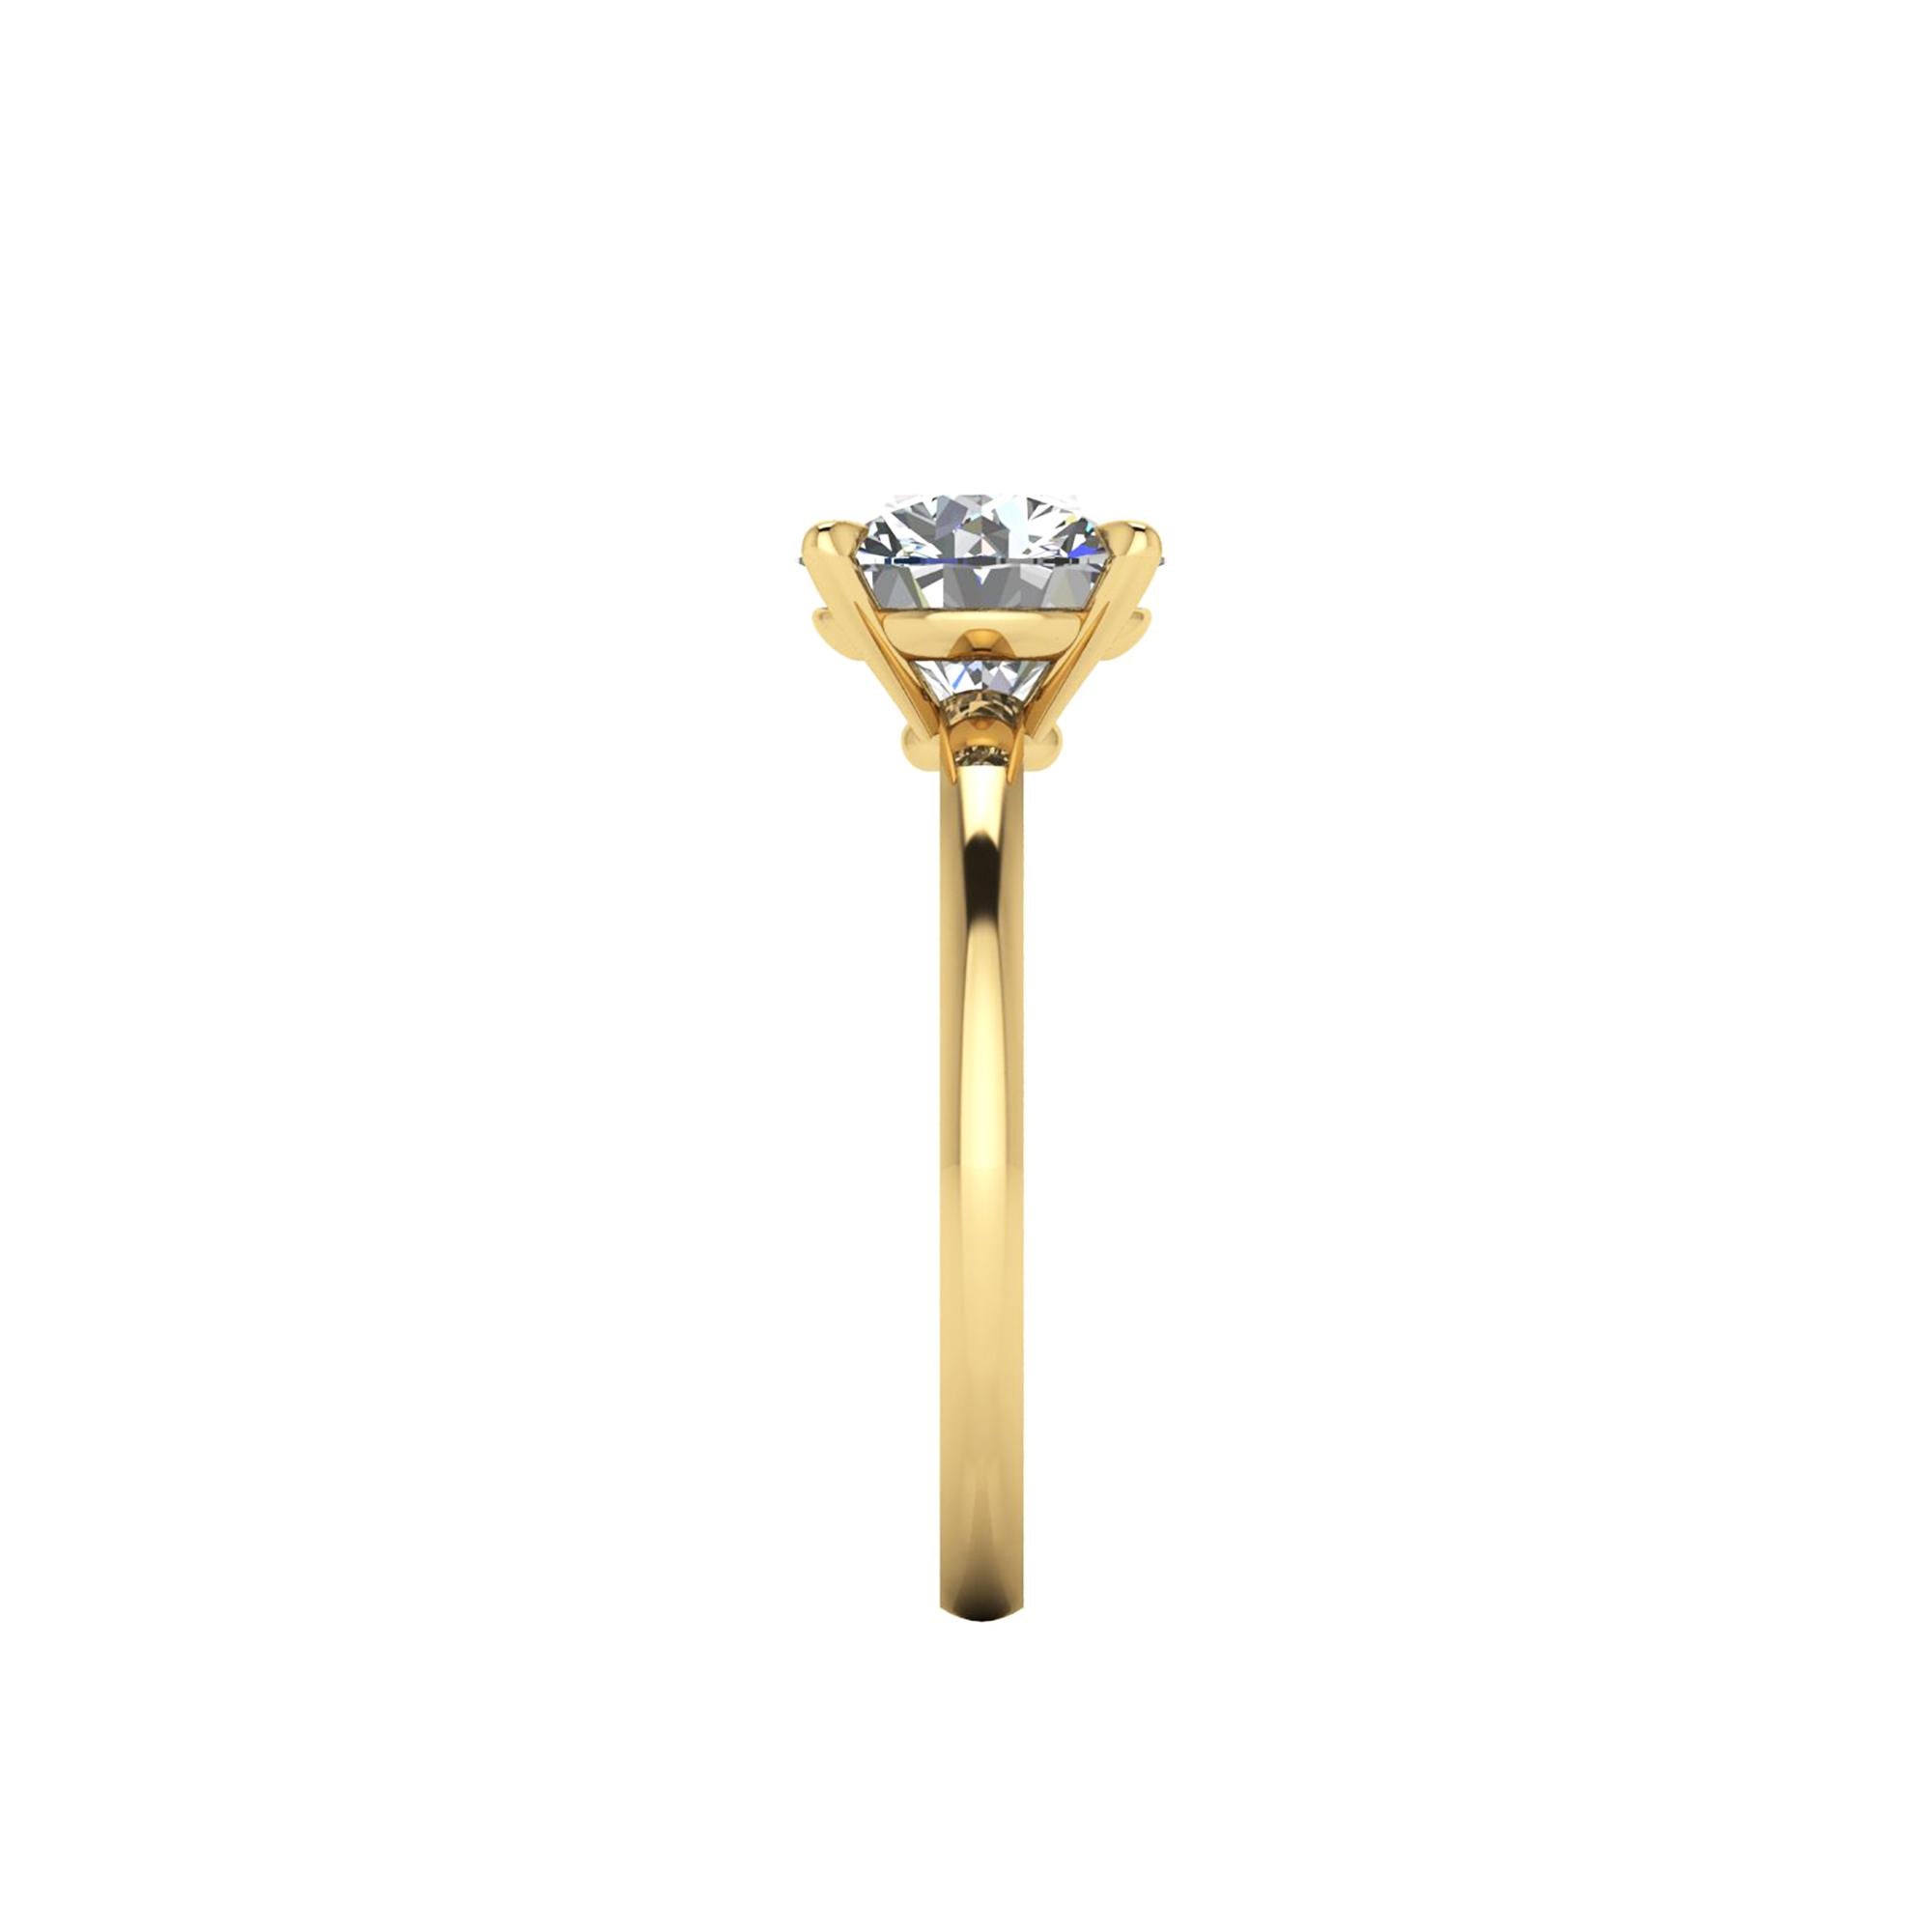 Diamant rond blanc certifié GIA de 2,01 carats, couleur G, pureté VS2, triple Excellent en taille, symétrie et polissage, serti dans une bague de fiançailles solitaire en or jaune 18 carats faite à la main à New York, un message audacieux de